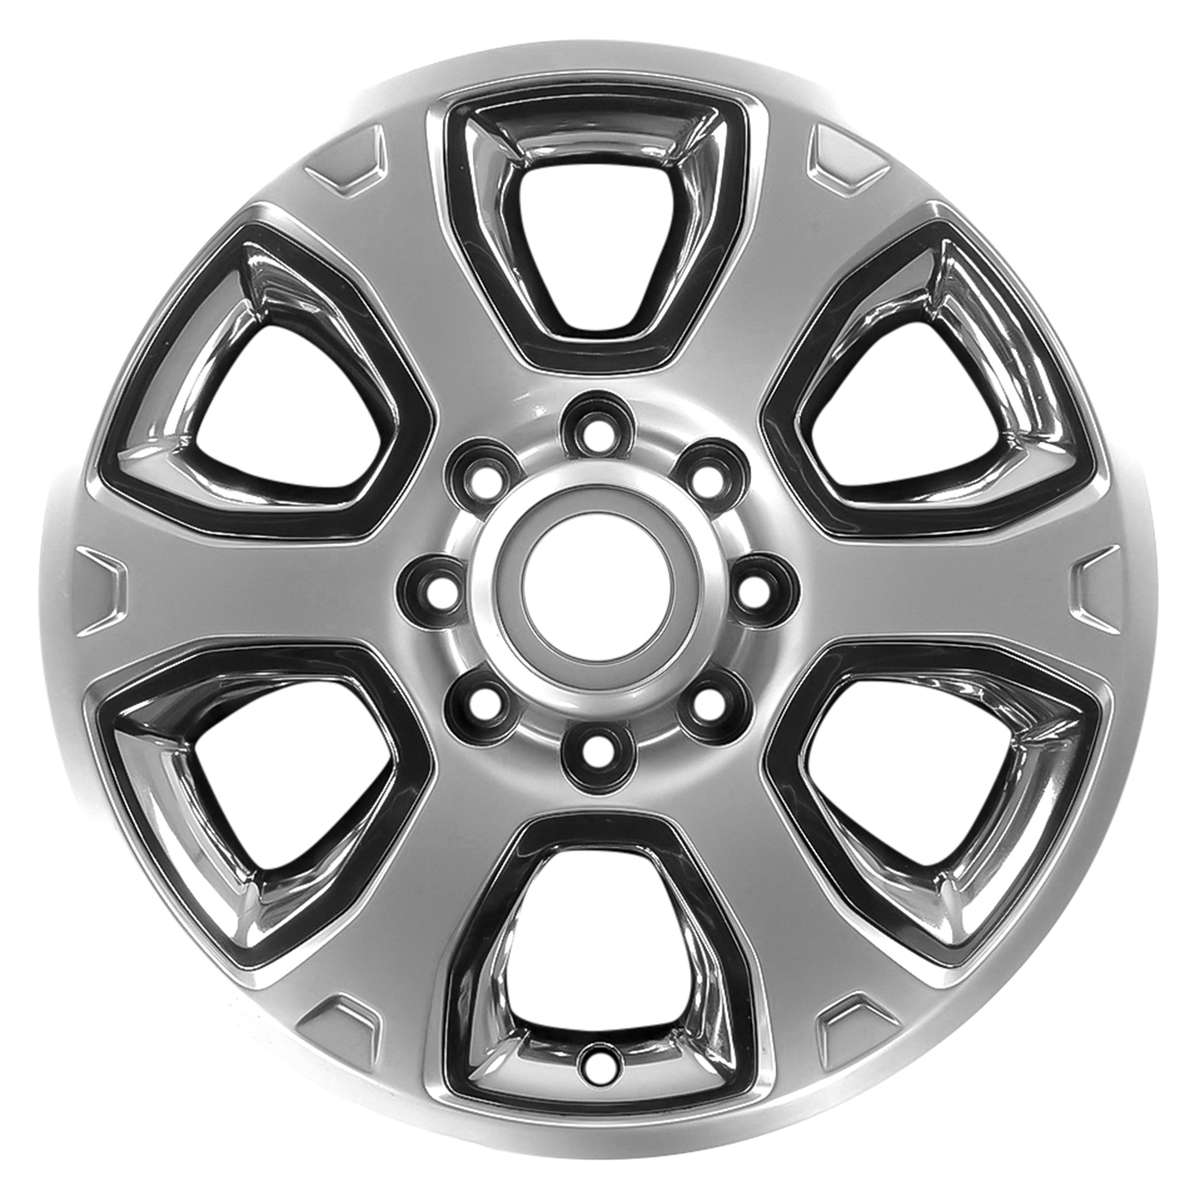 2017 Dodge RAM 2500 20" OEM Wheel Rim W2477H